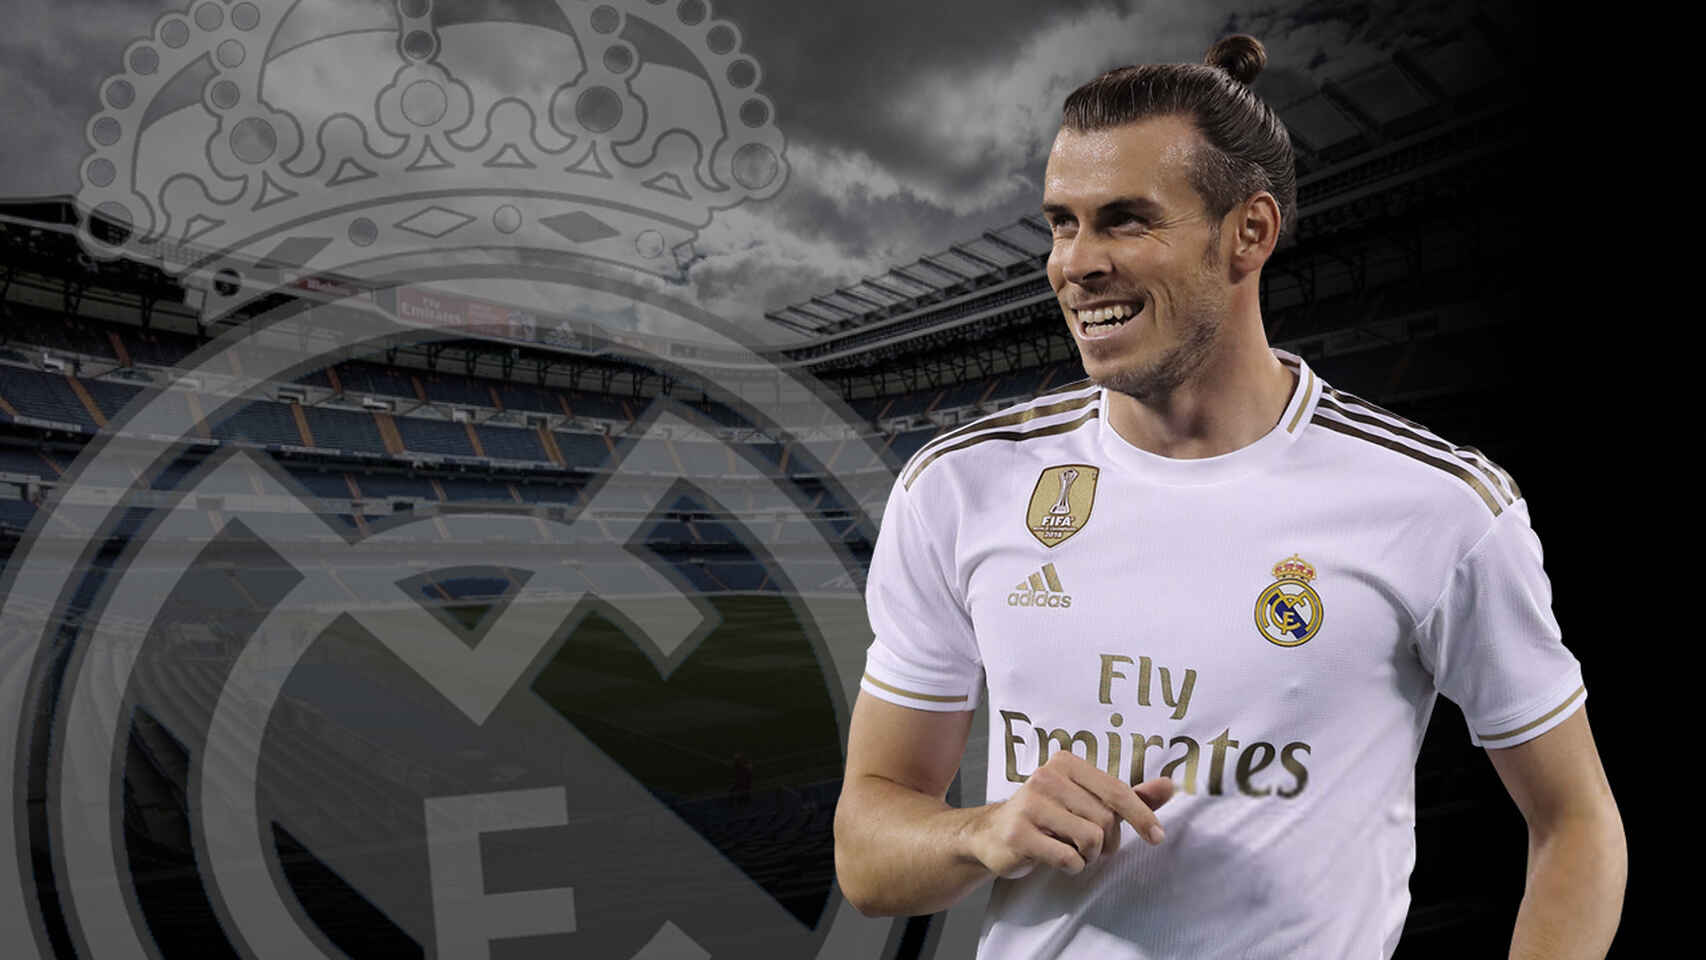 Gareth_Bale-Real_Madrid-Futbol_521708584_160282363_1706x960